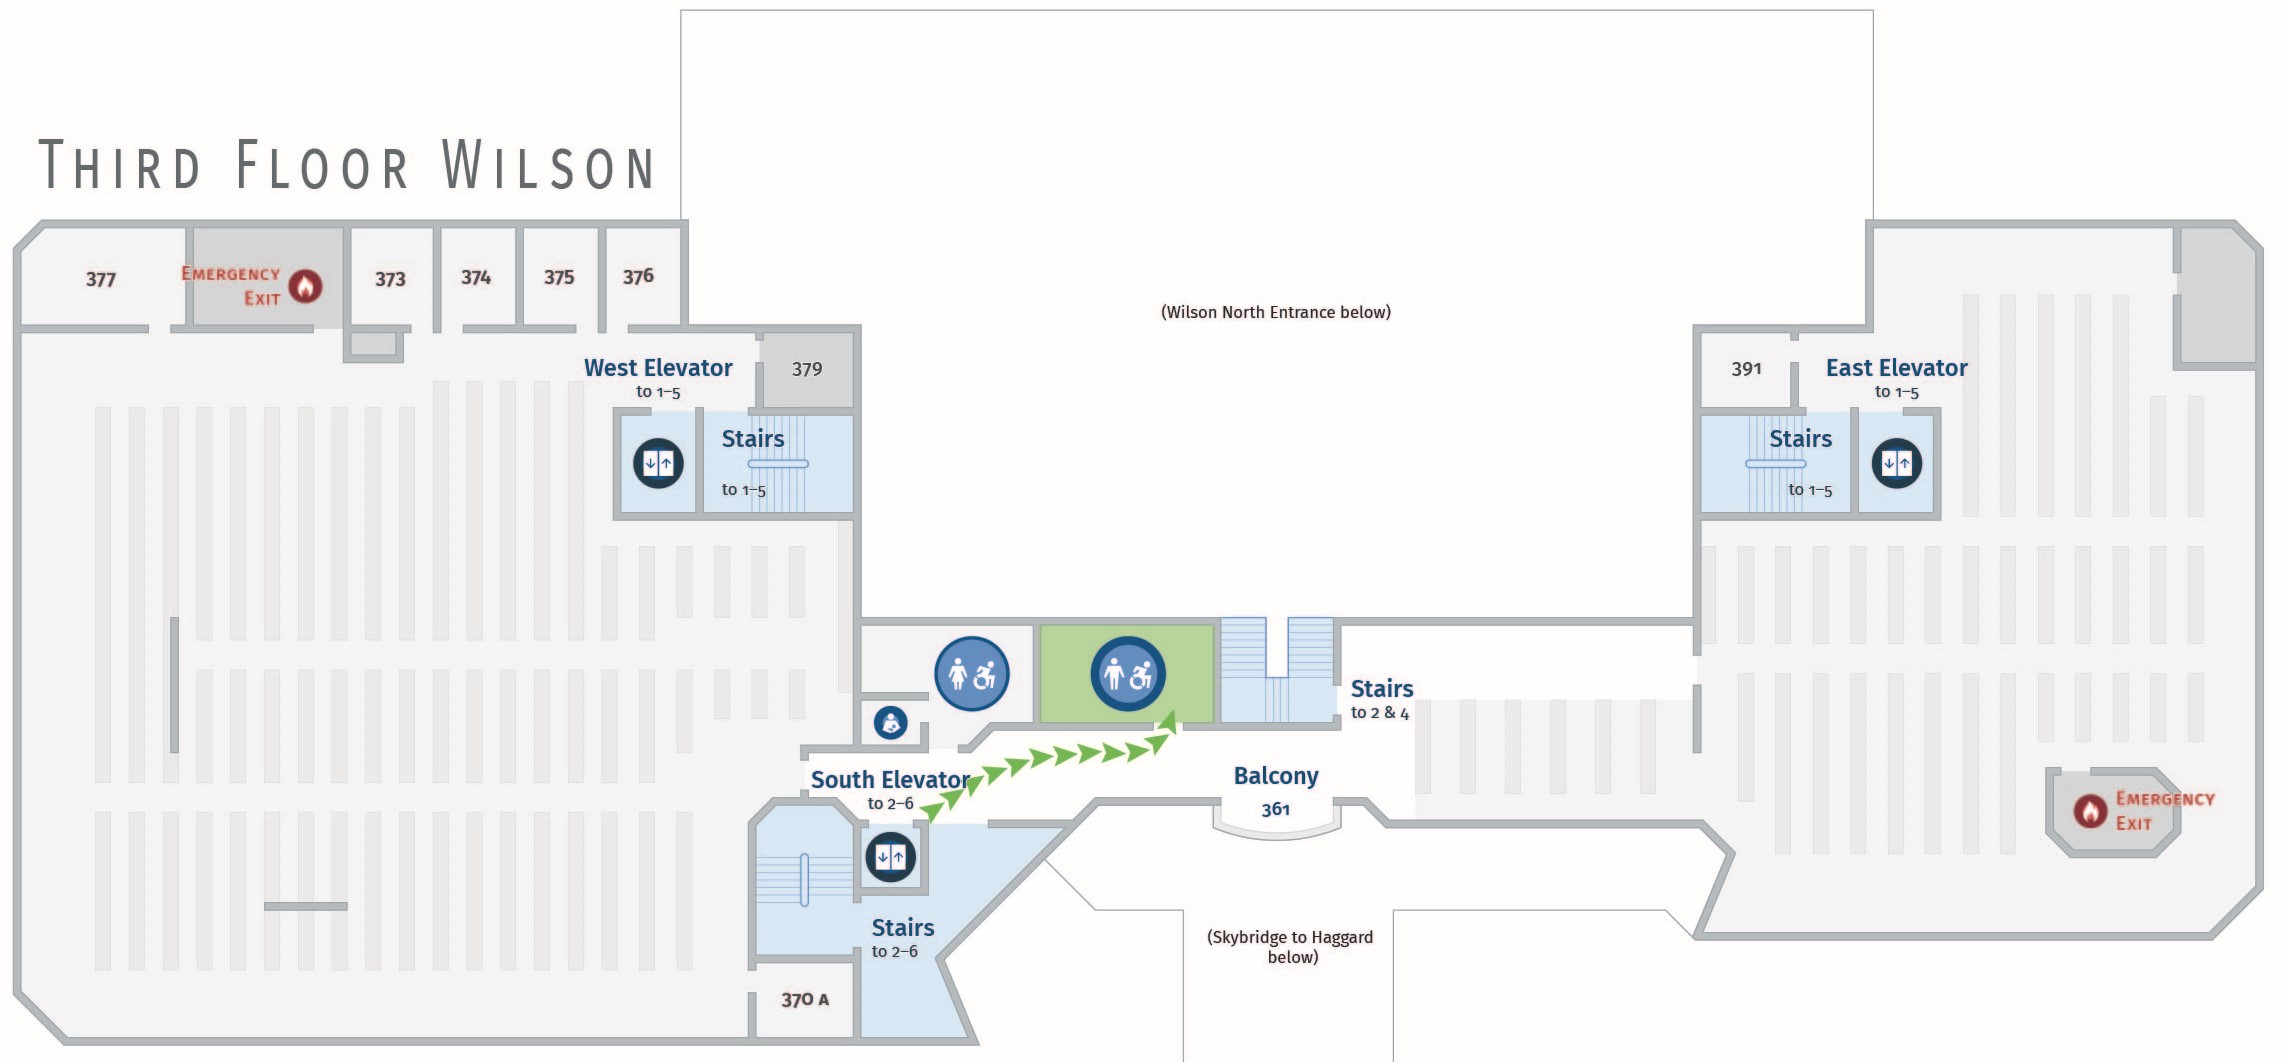 Floor plan, third floor of Wilson with path to men's restroom. Wilson 365.